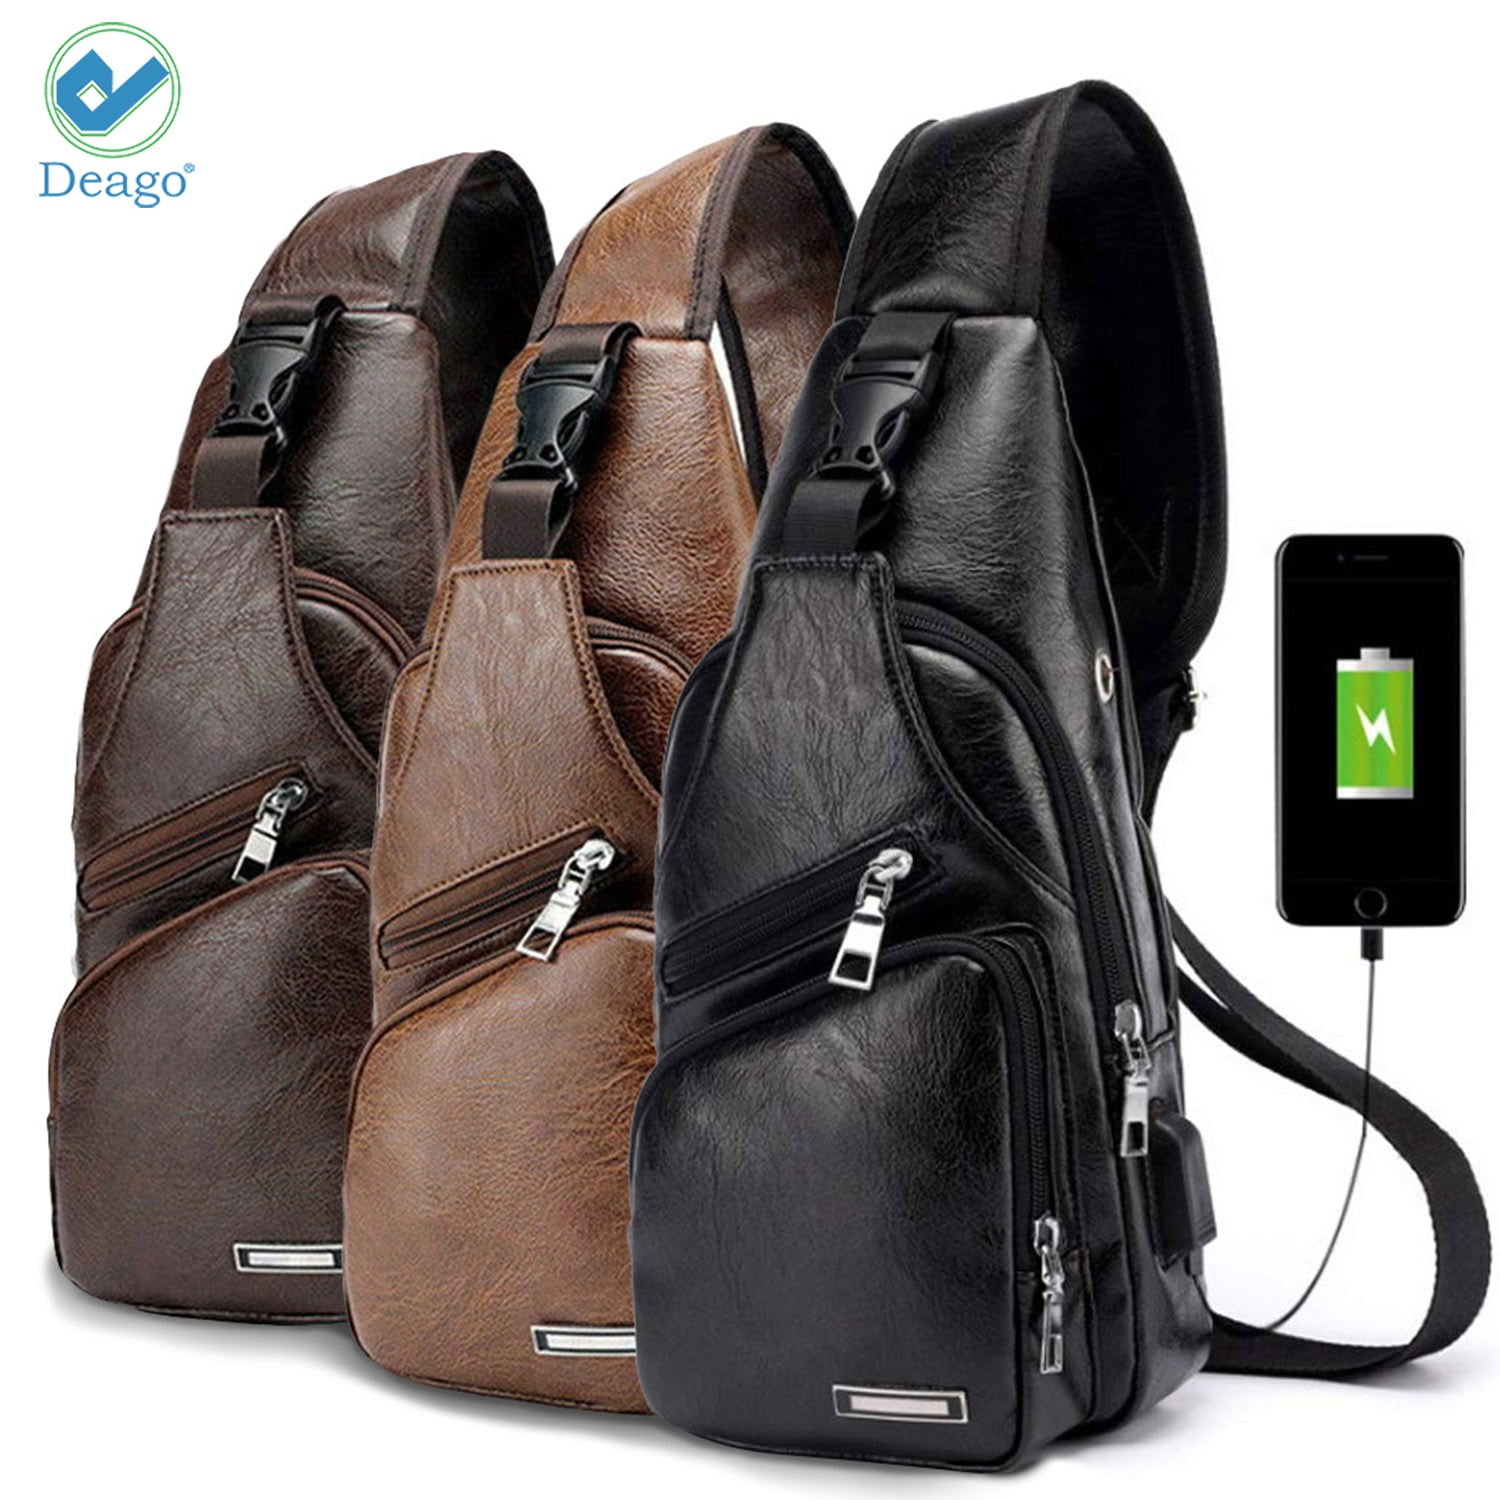 Deago PU Leather Sling Bag for Men & Women - Chest Shoulder Bag Unbalance Crossbody  Backpack Water Resistant Daypack for Gym Travel Hiking (13.8 * 6.7 *  2.5, Black) 